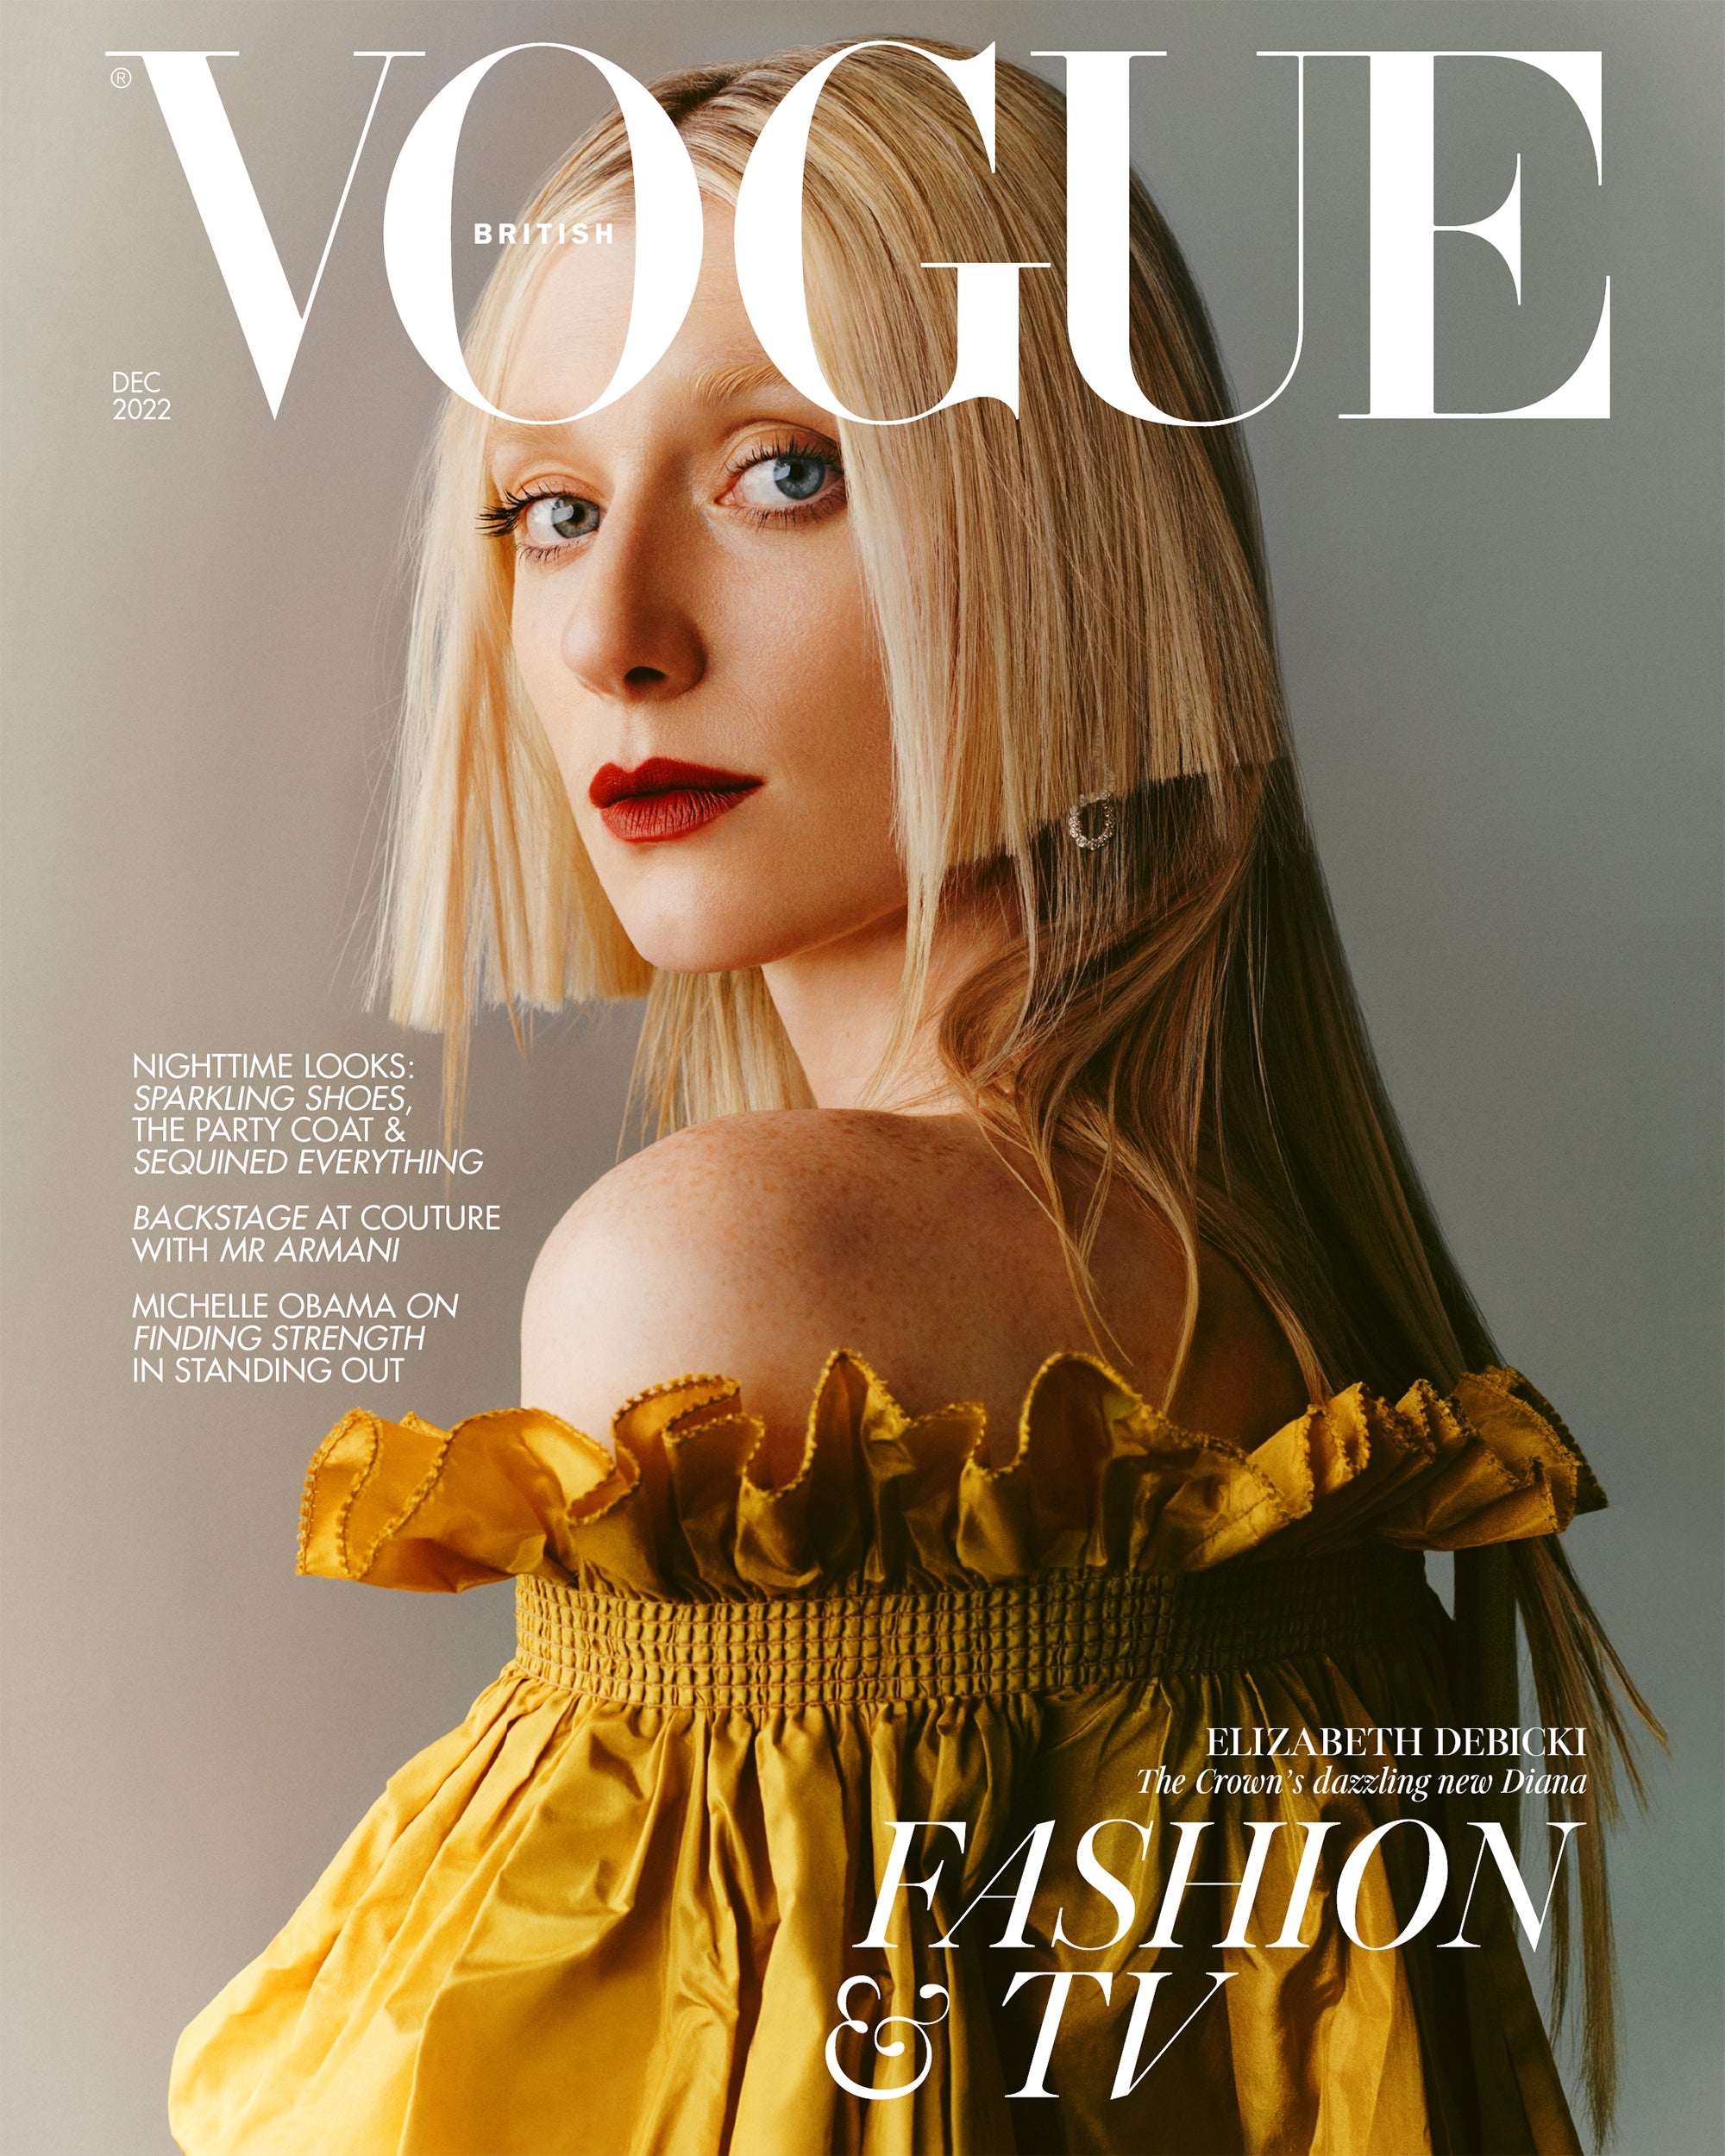 Elizabeth Debicki for Vogue UK Magazine December 2022 The Crown